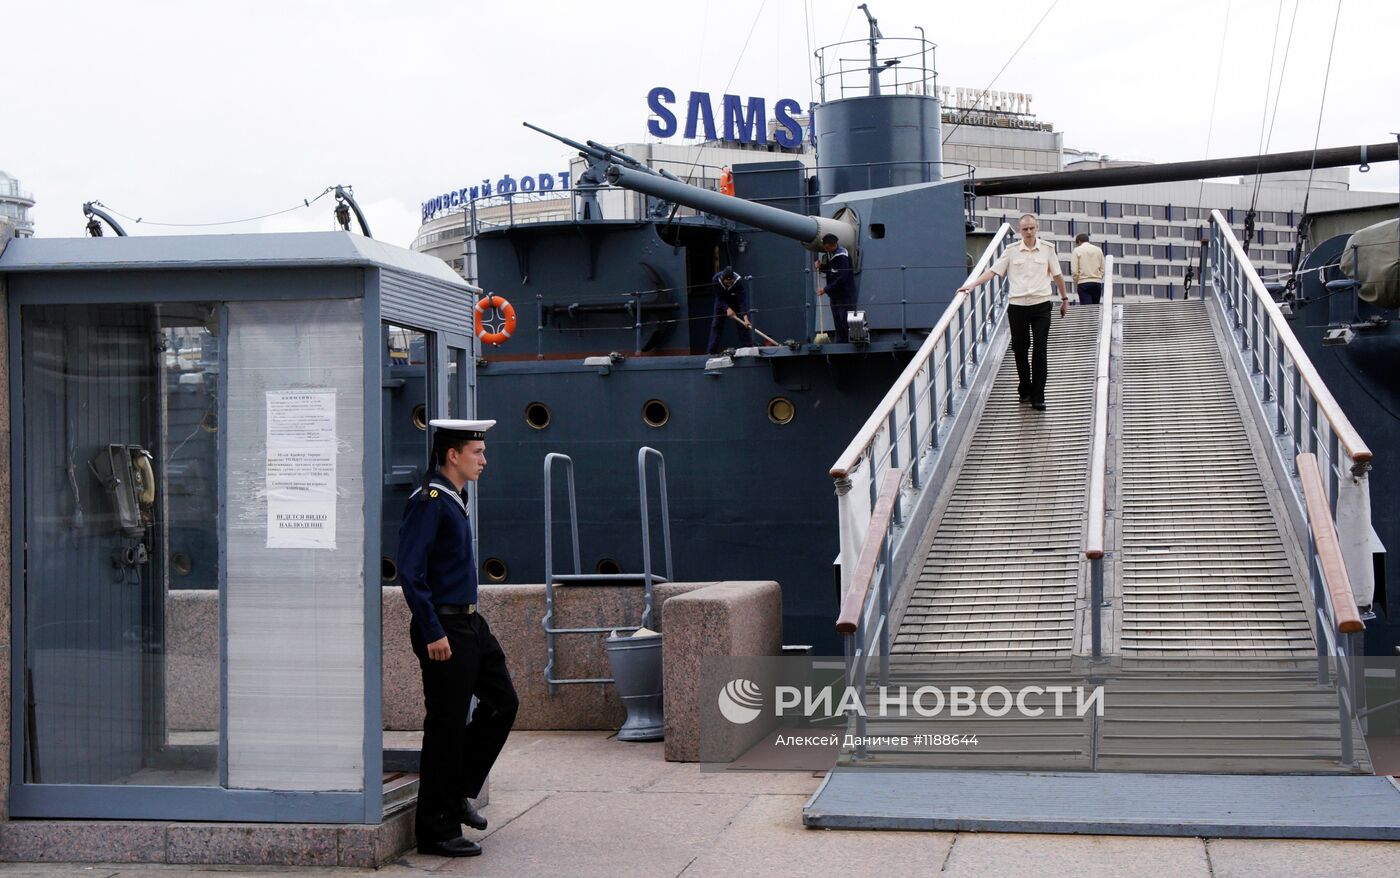 Плановая уборка крейсера "Аврора" в Санкт-Петербурге